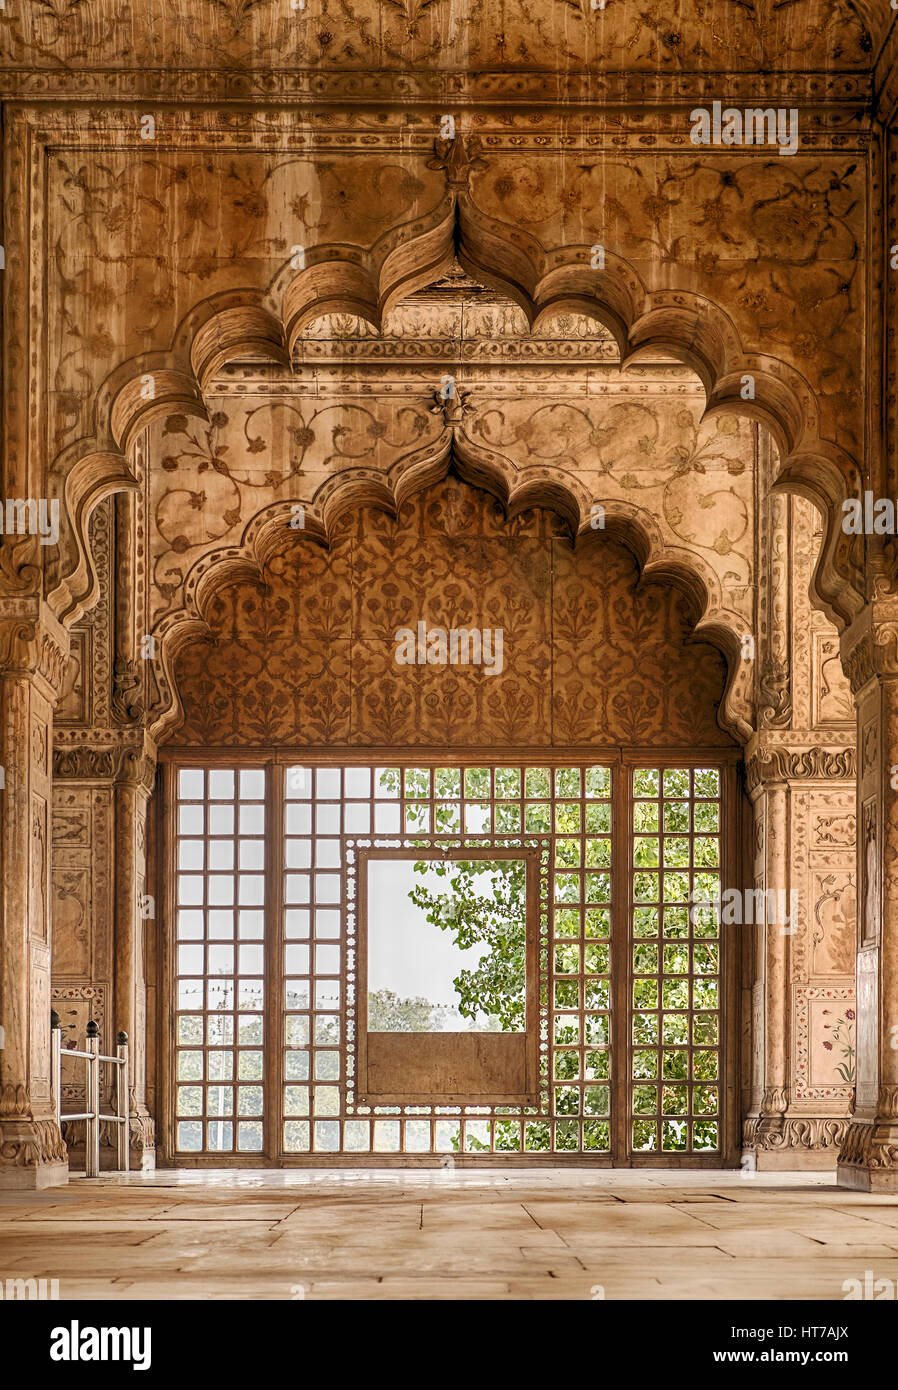 Una serie di archi nella sala dell'udienza privata (divano ho khas) nella Red fort di Delhi, India conduce a una finestra con una vista. Foto Stock